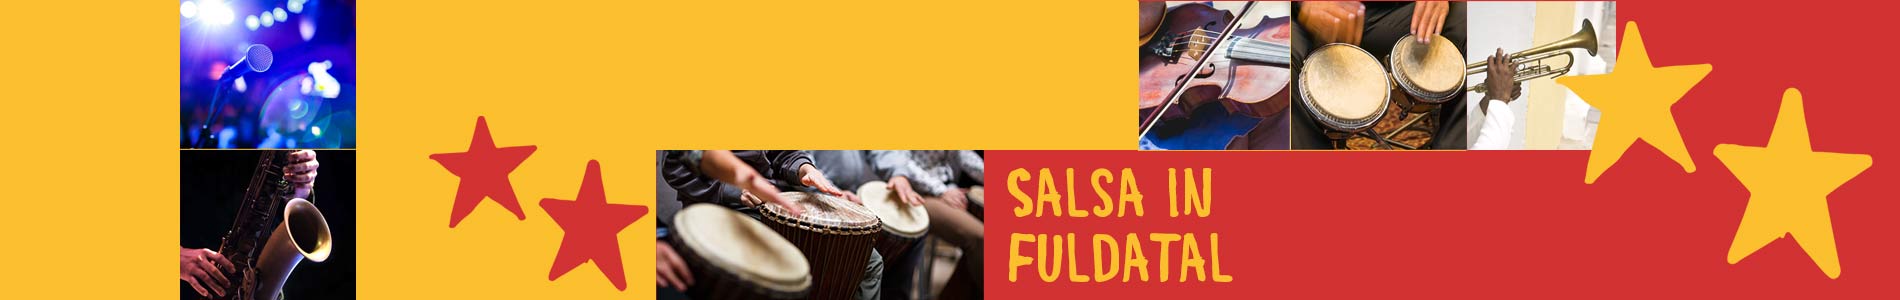 Salsa in Fuldatal – Salsa lernen und tanzen, Tanzkurse, Partys, Veranstaltungen